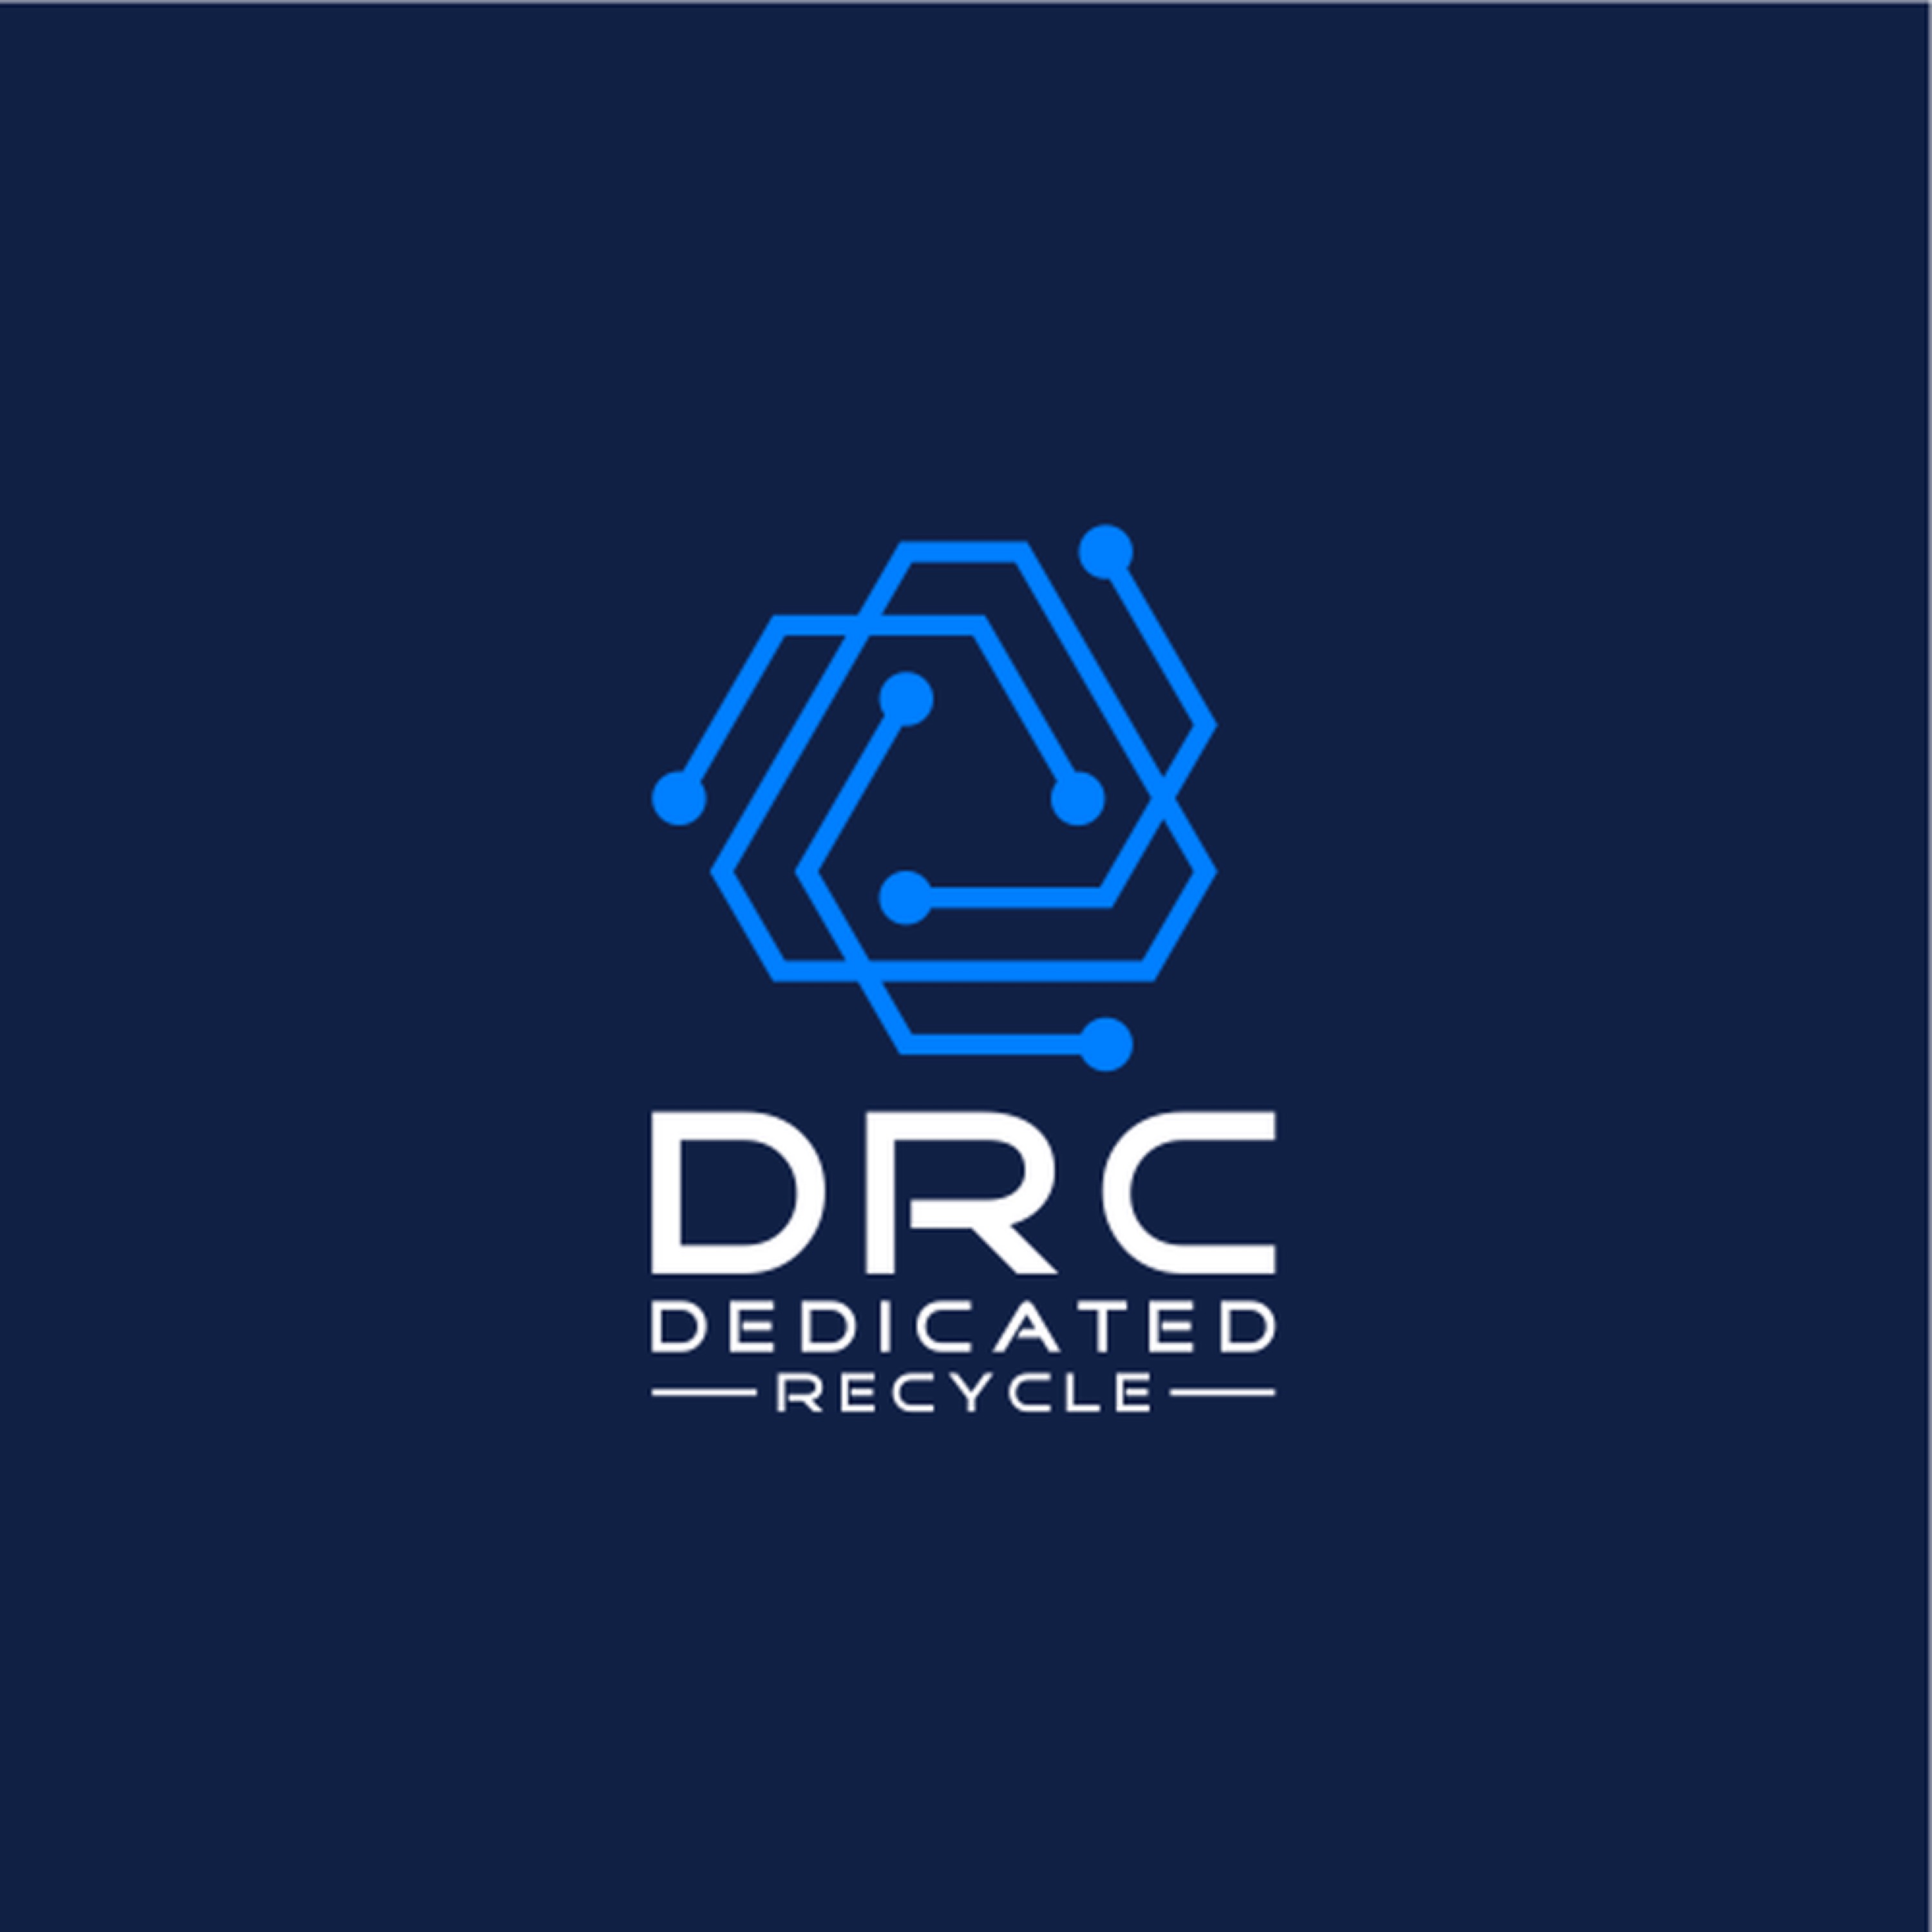 Dedicated Recycling Company Logo